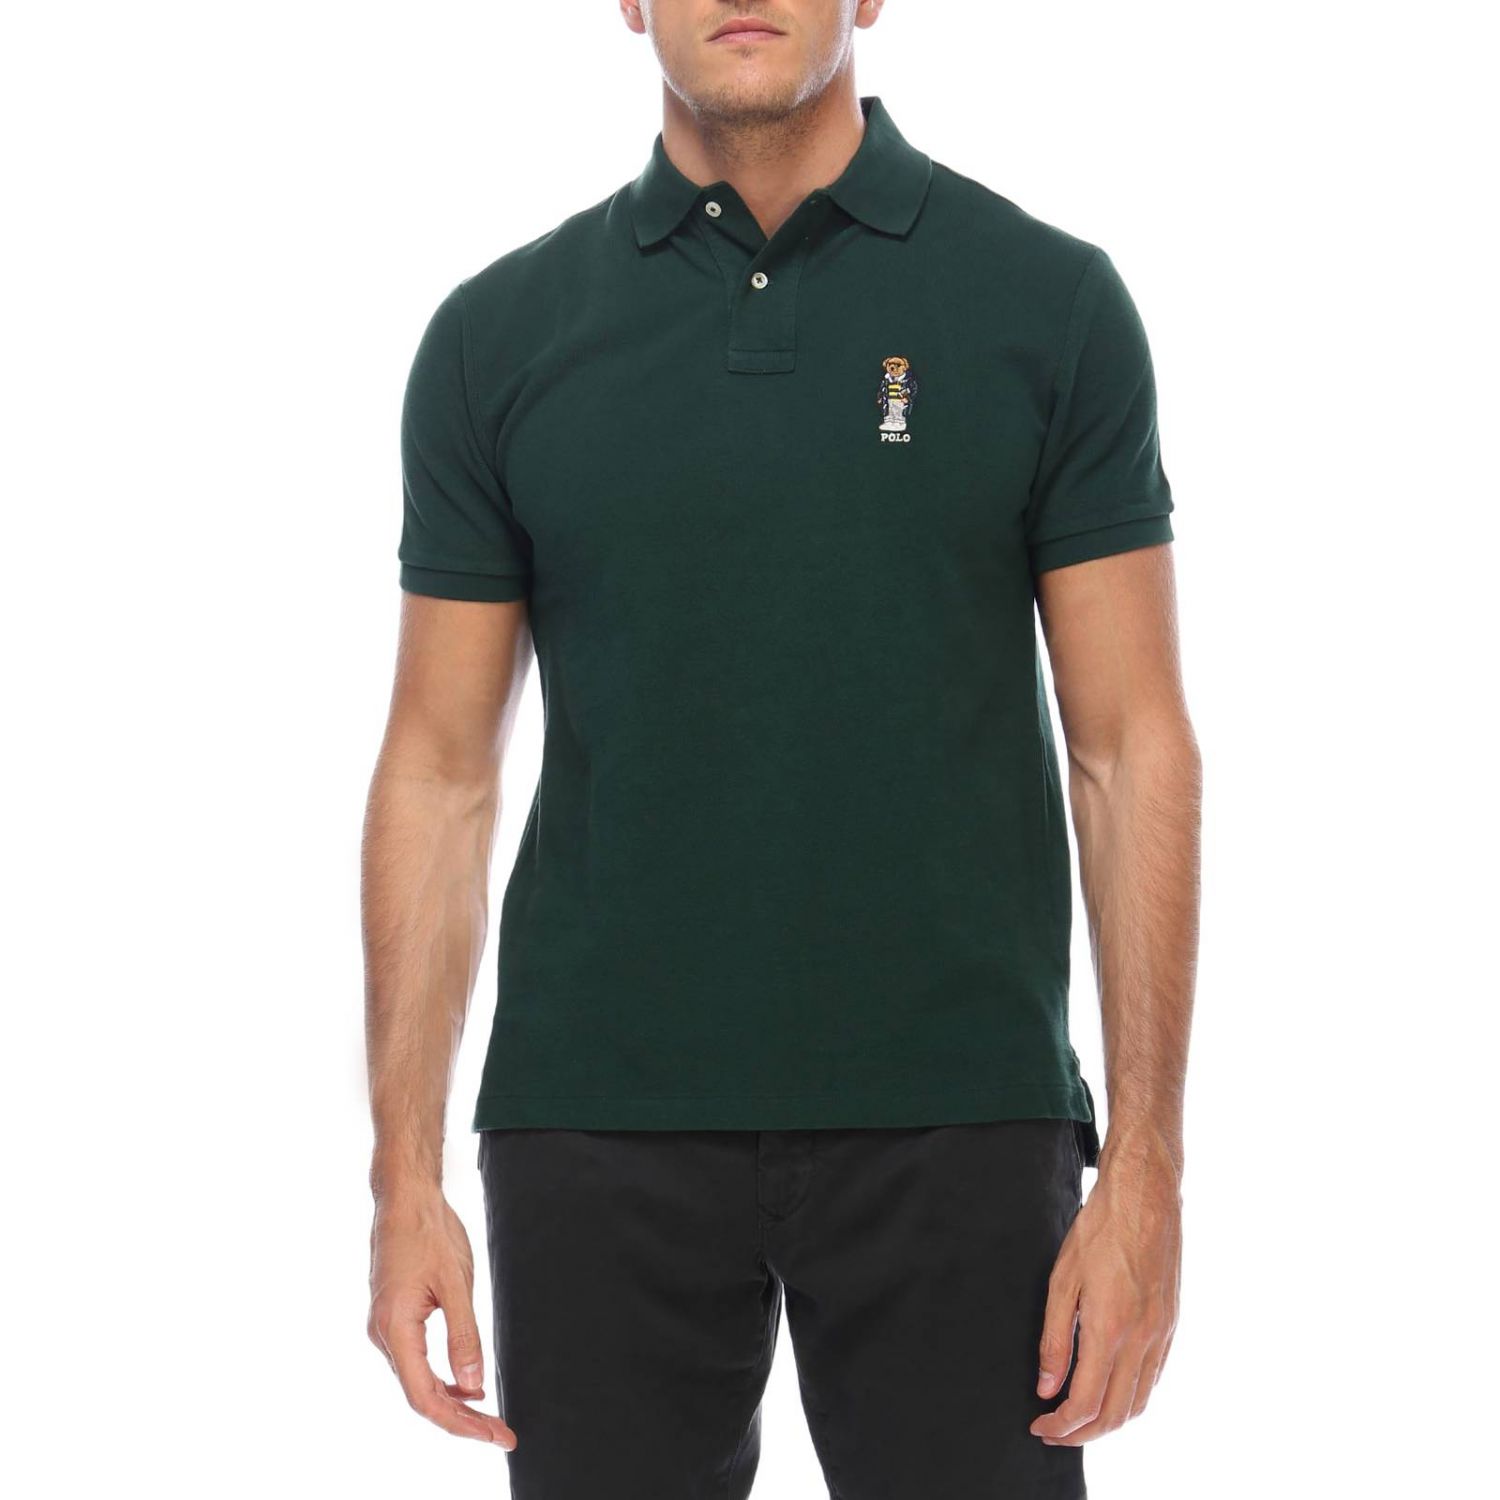 Polo Ralph Lauren Outlet: T-shirt men - Green | T-Shirt Polo Ralph ...